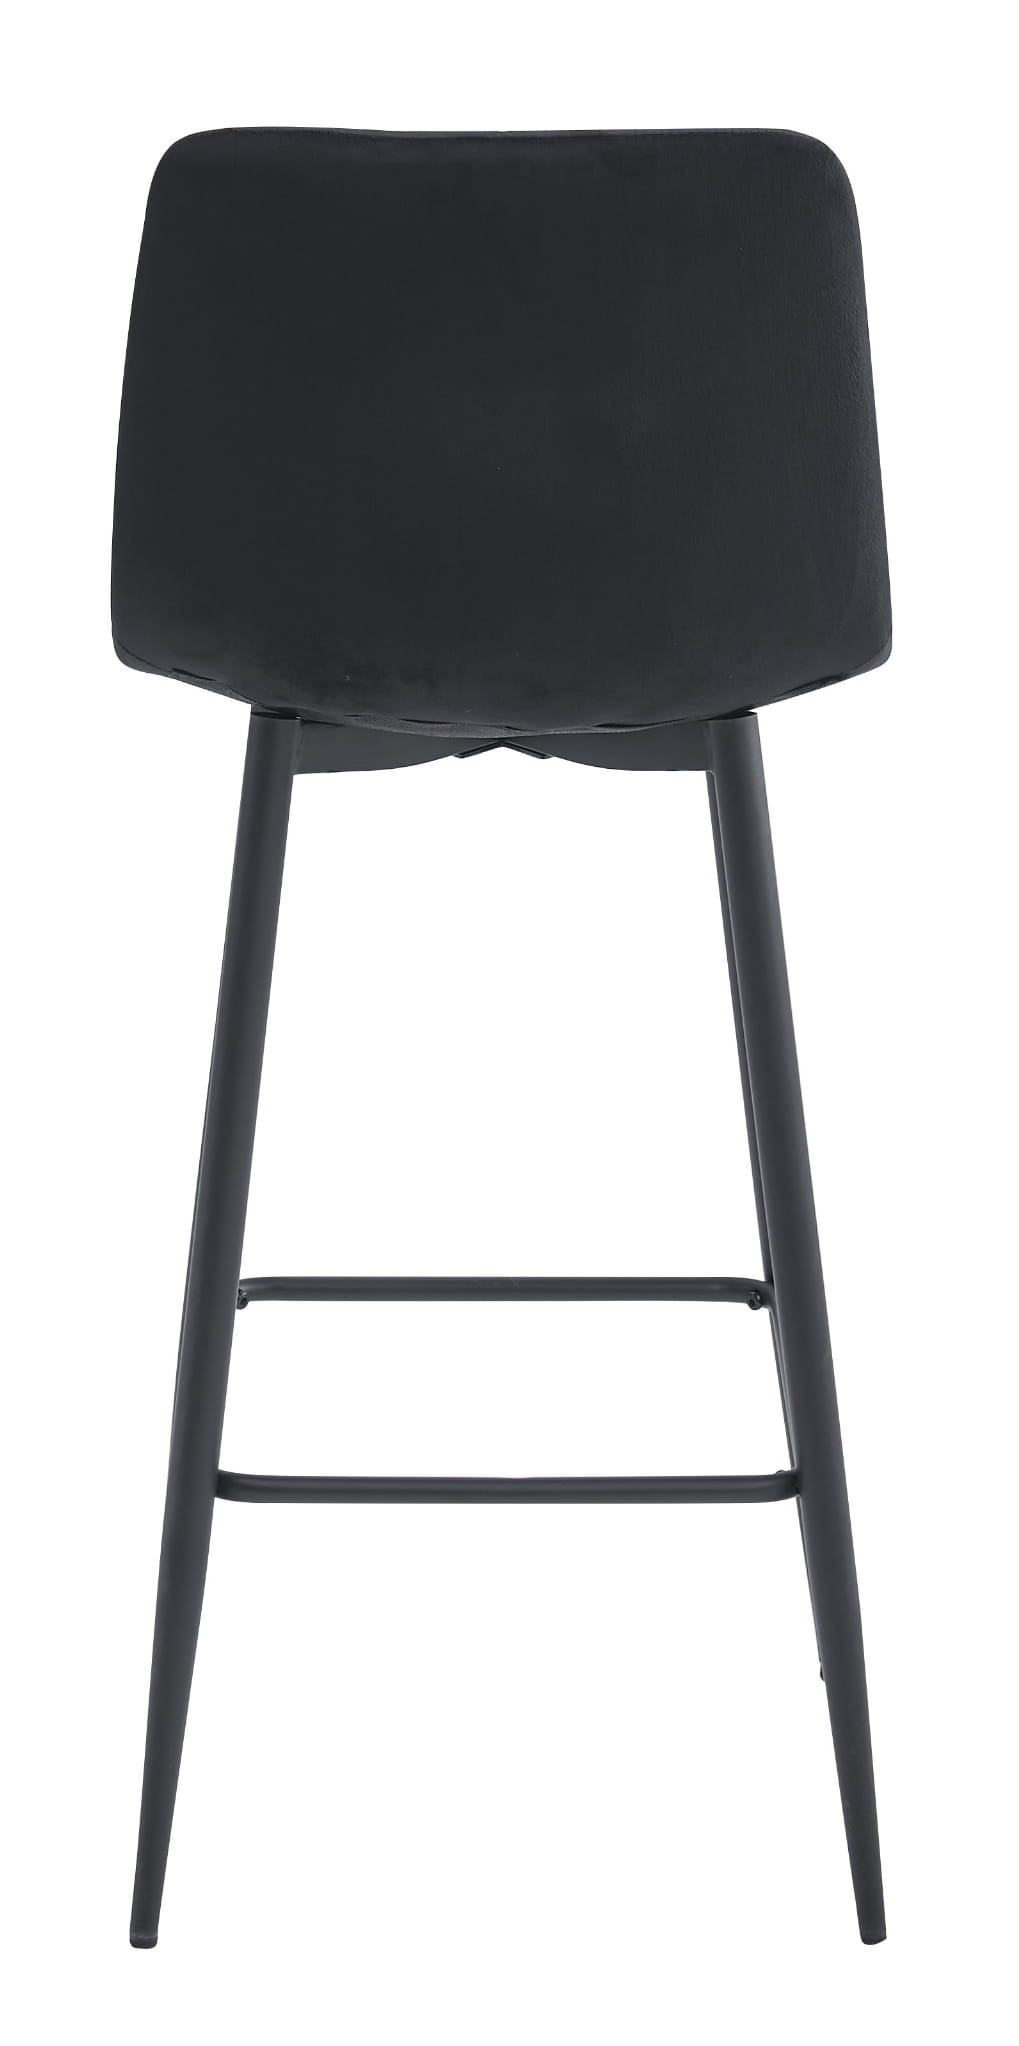 Barová židle NADO sametová černá (černé nohy)